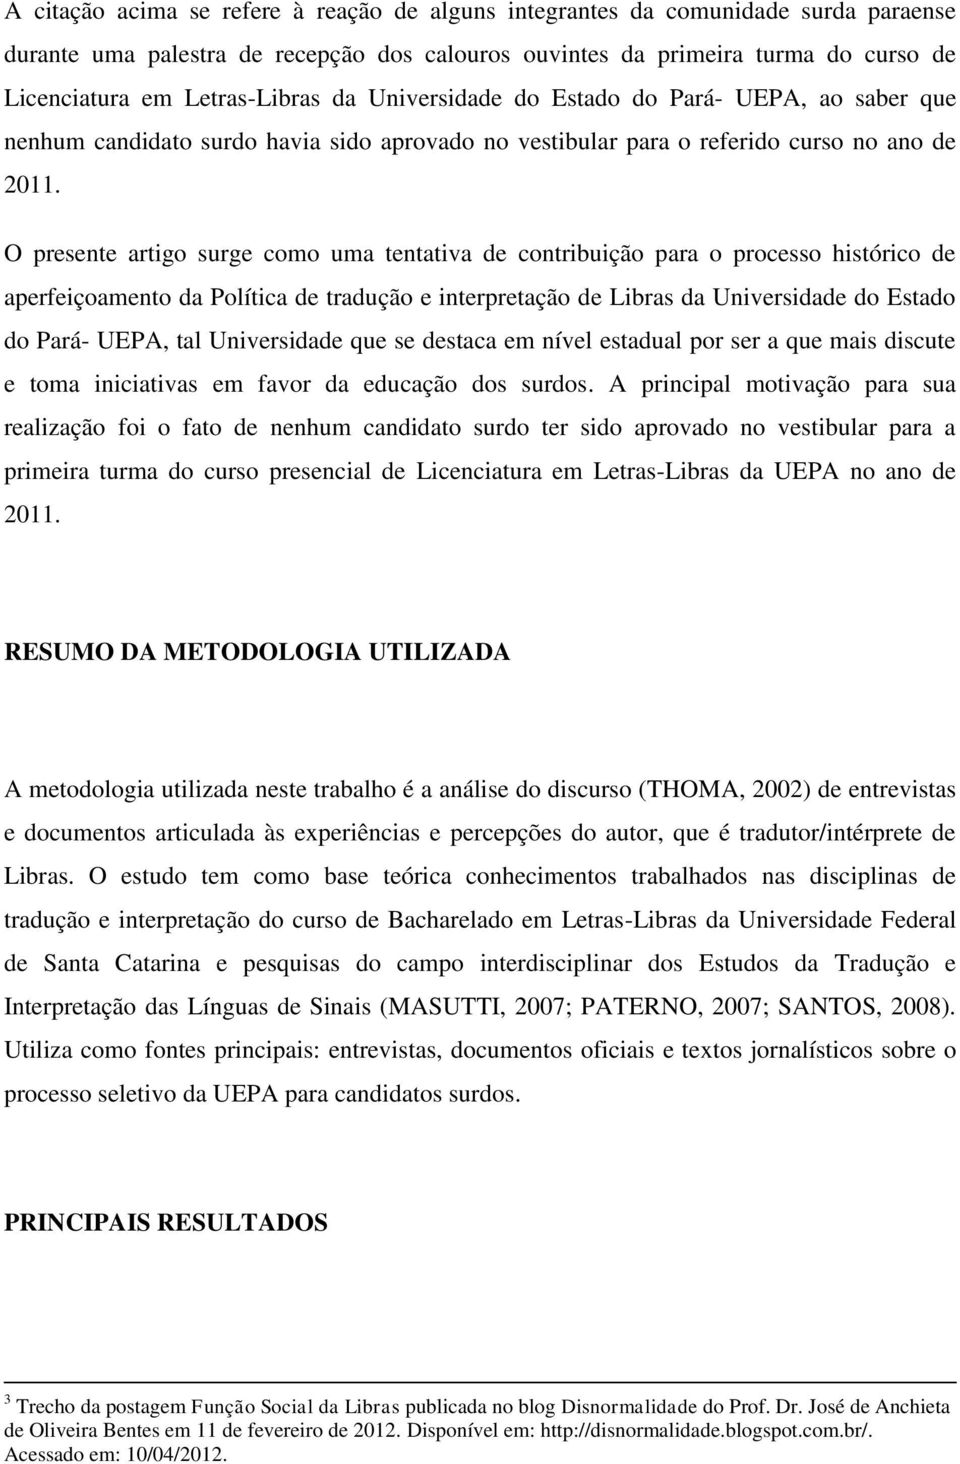 O presente artigo surge como uma tentativa de contribuição para o processo histórico de aperfeiçoamento da Política de tradução e interpretação de Libras da Universidade do Estado do Pará- UEPA, tal